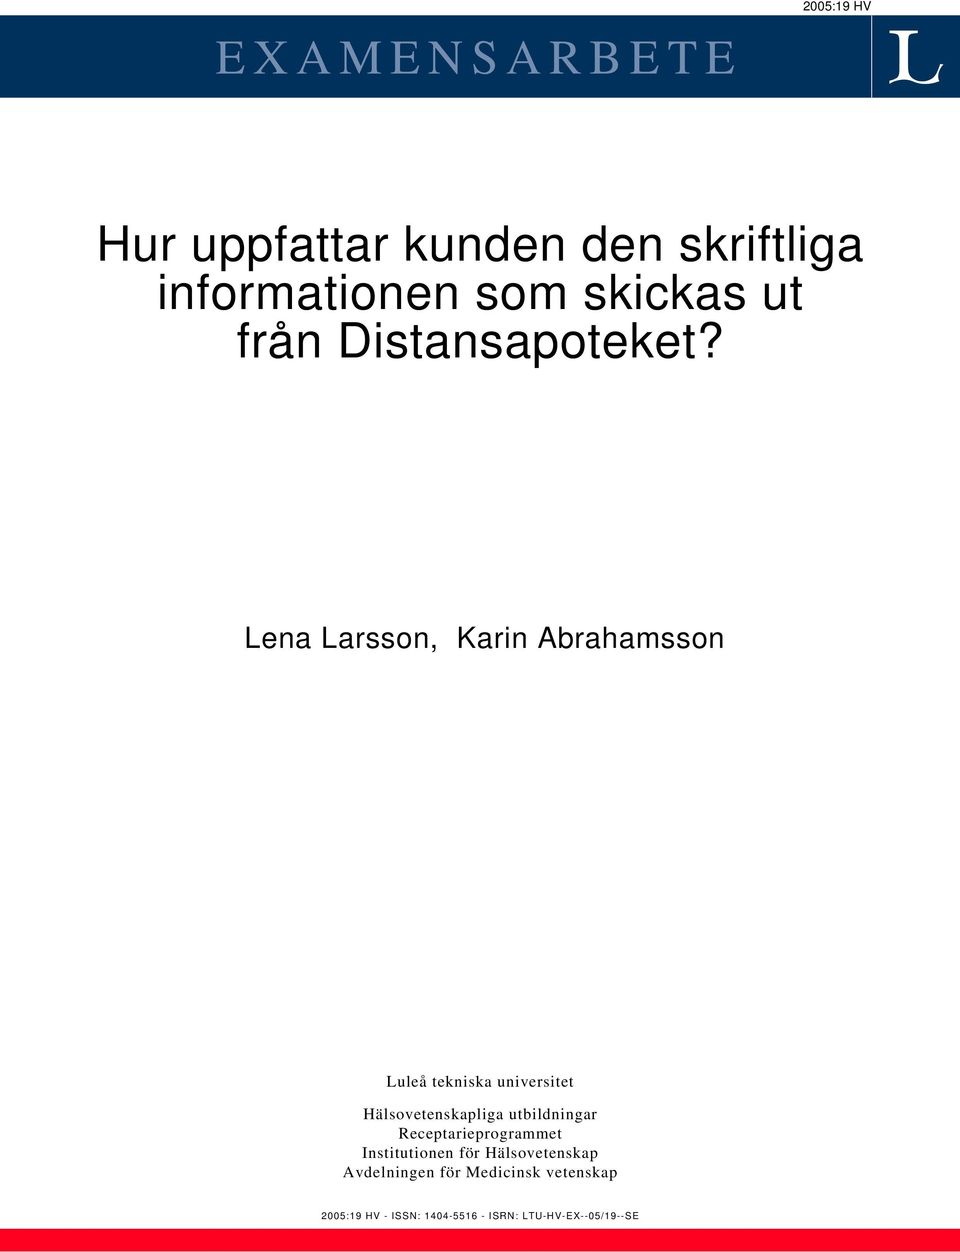 Lena Larsson, Karin Abrahamsson Luleå tekniska universitet Hälsovetenskapliga